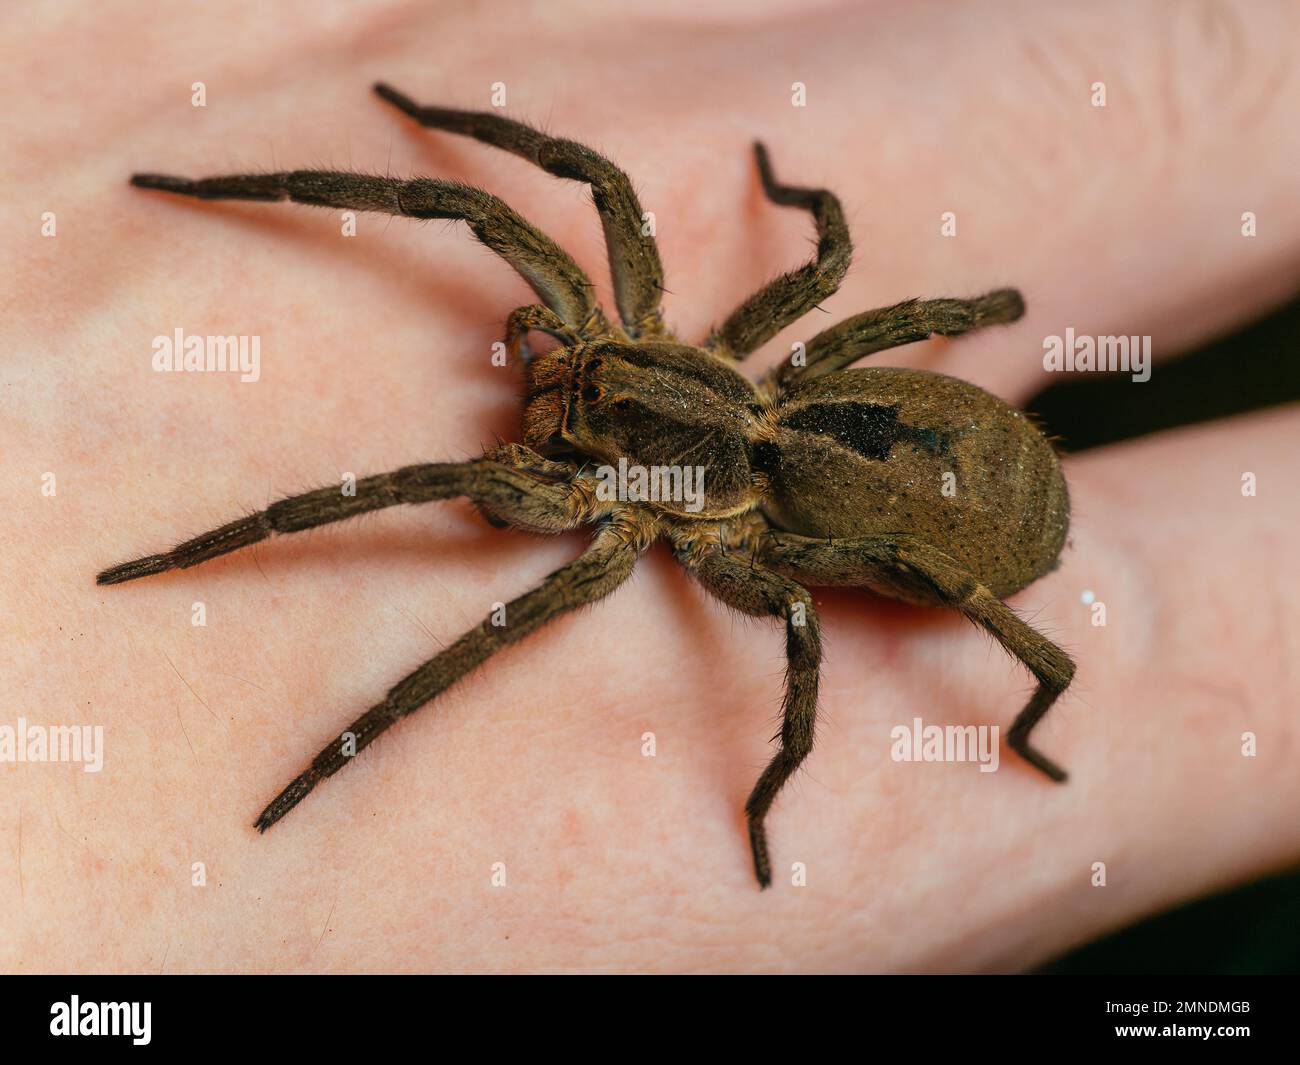 Une araignée de loup (Lycosa, aranha de jardim) sur la main humaine, portrait détaillé avec les yeux d'araignée visibles Banque D'Images